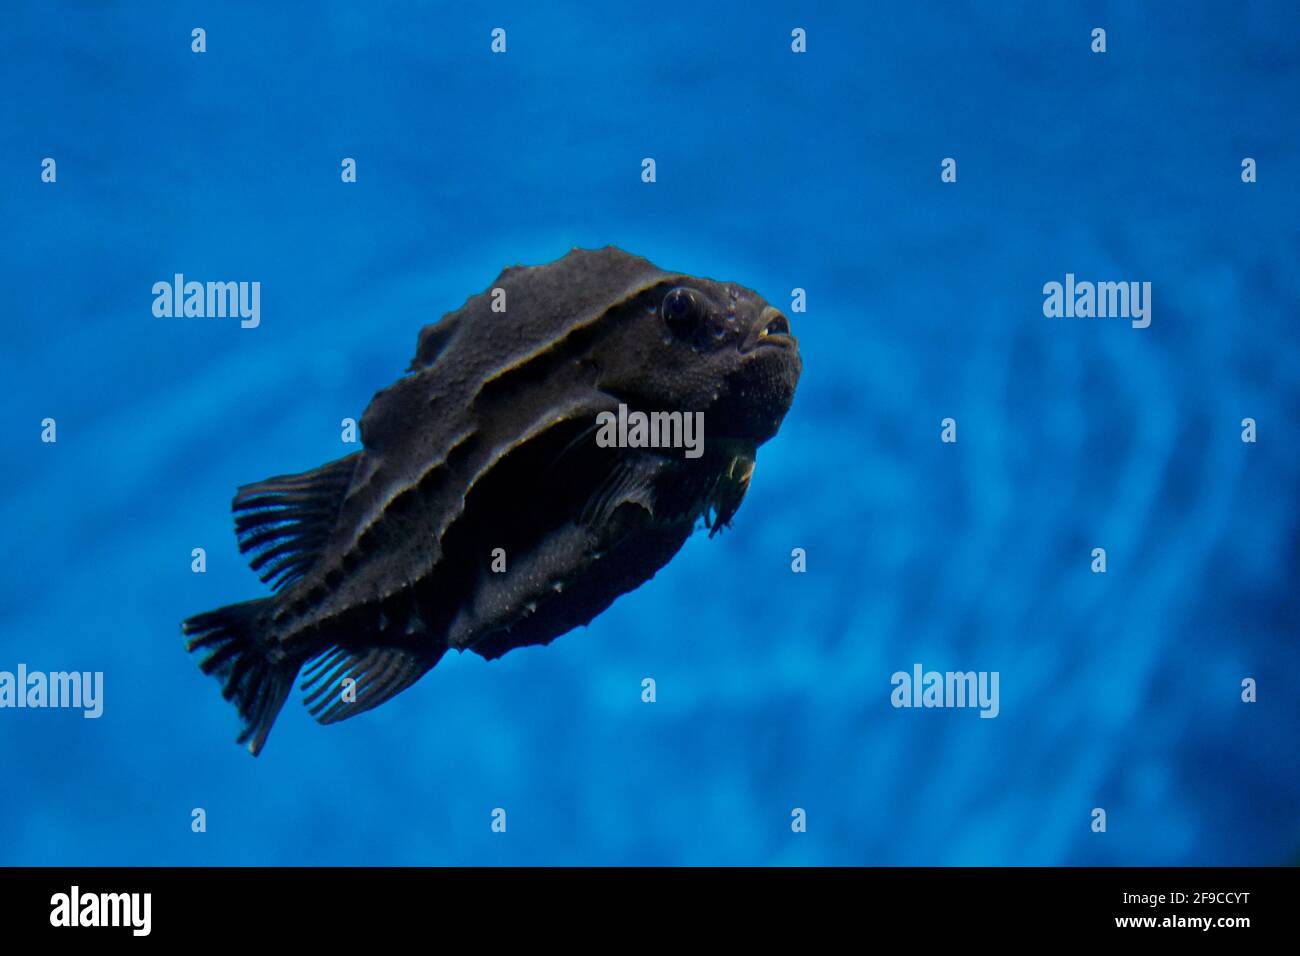 Black lumpsucker, or lumpfish (Cyclopterus lumpus) swims in aquarium. Stock Photo